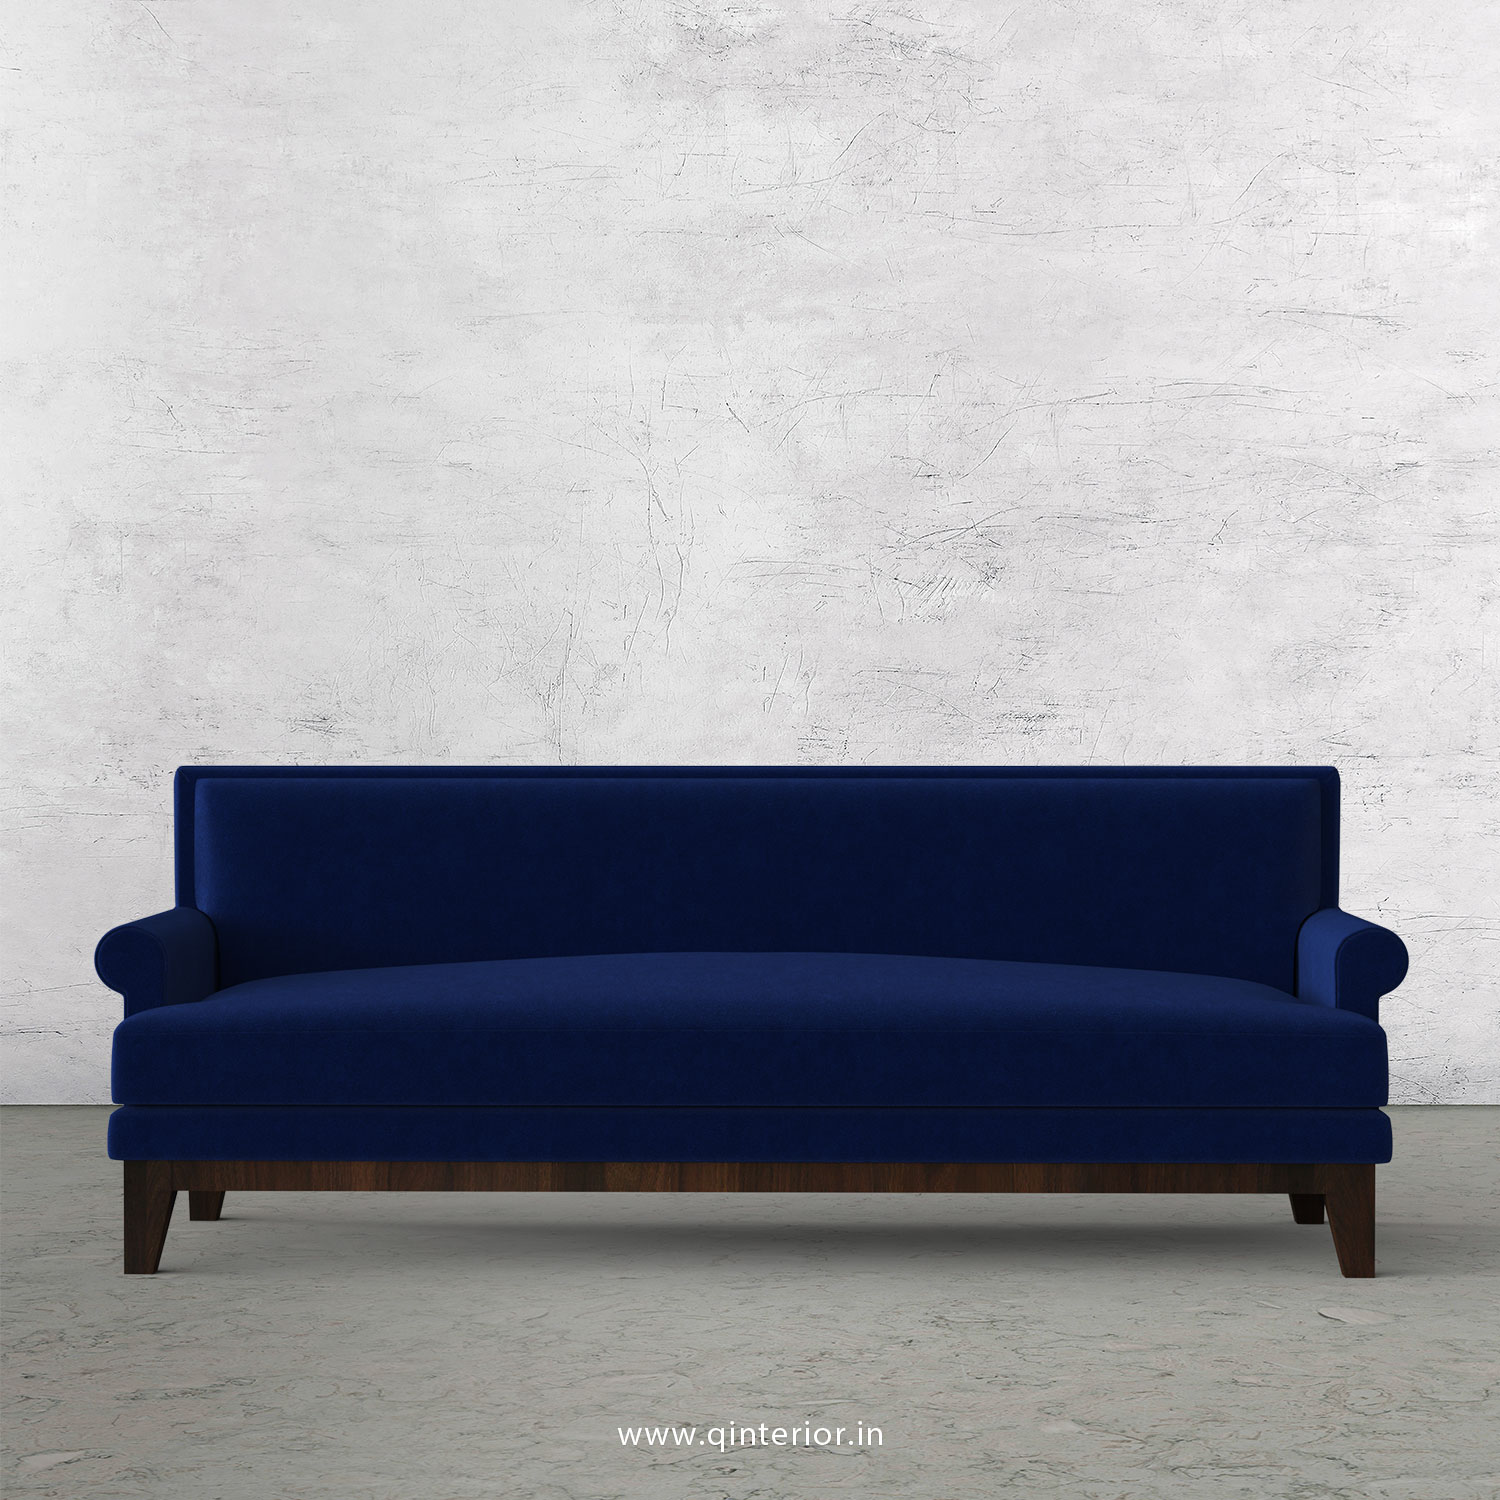 Aviana 3 Seater Sofa in Velvet Fabric - SFA001 VL05